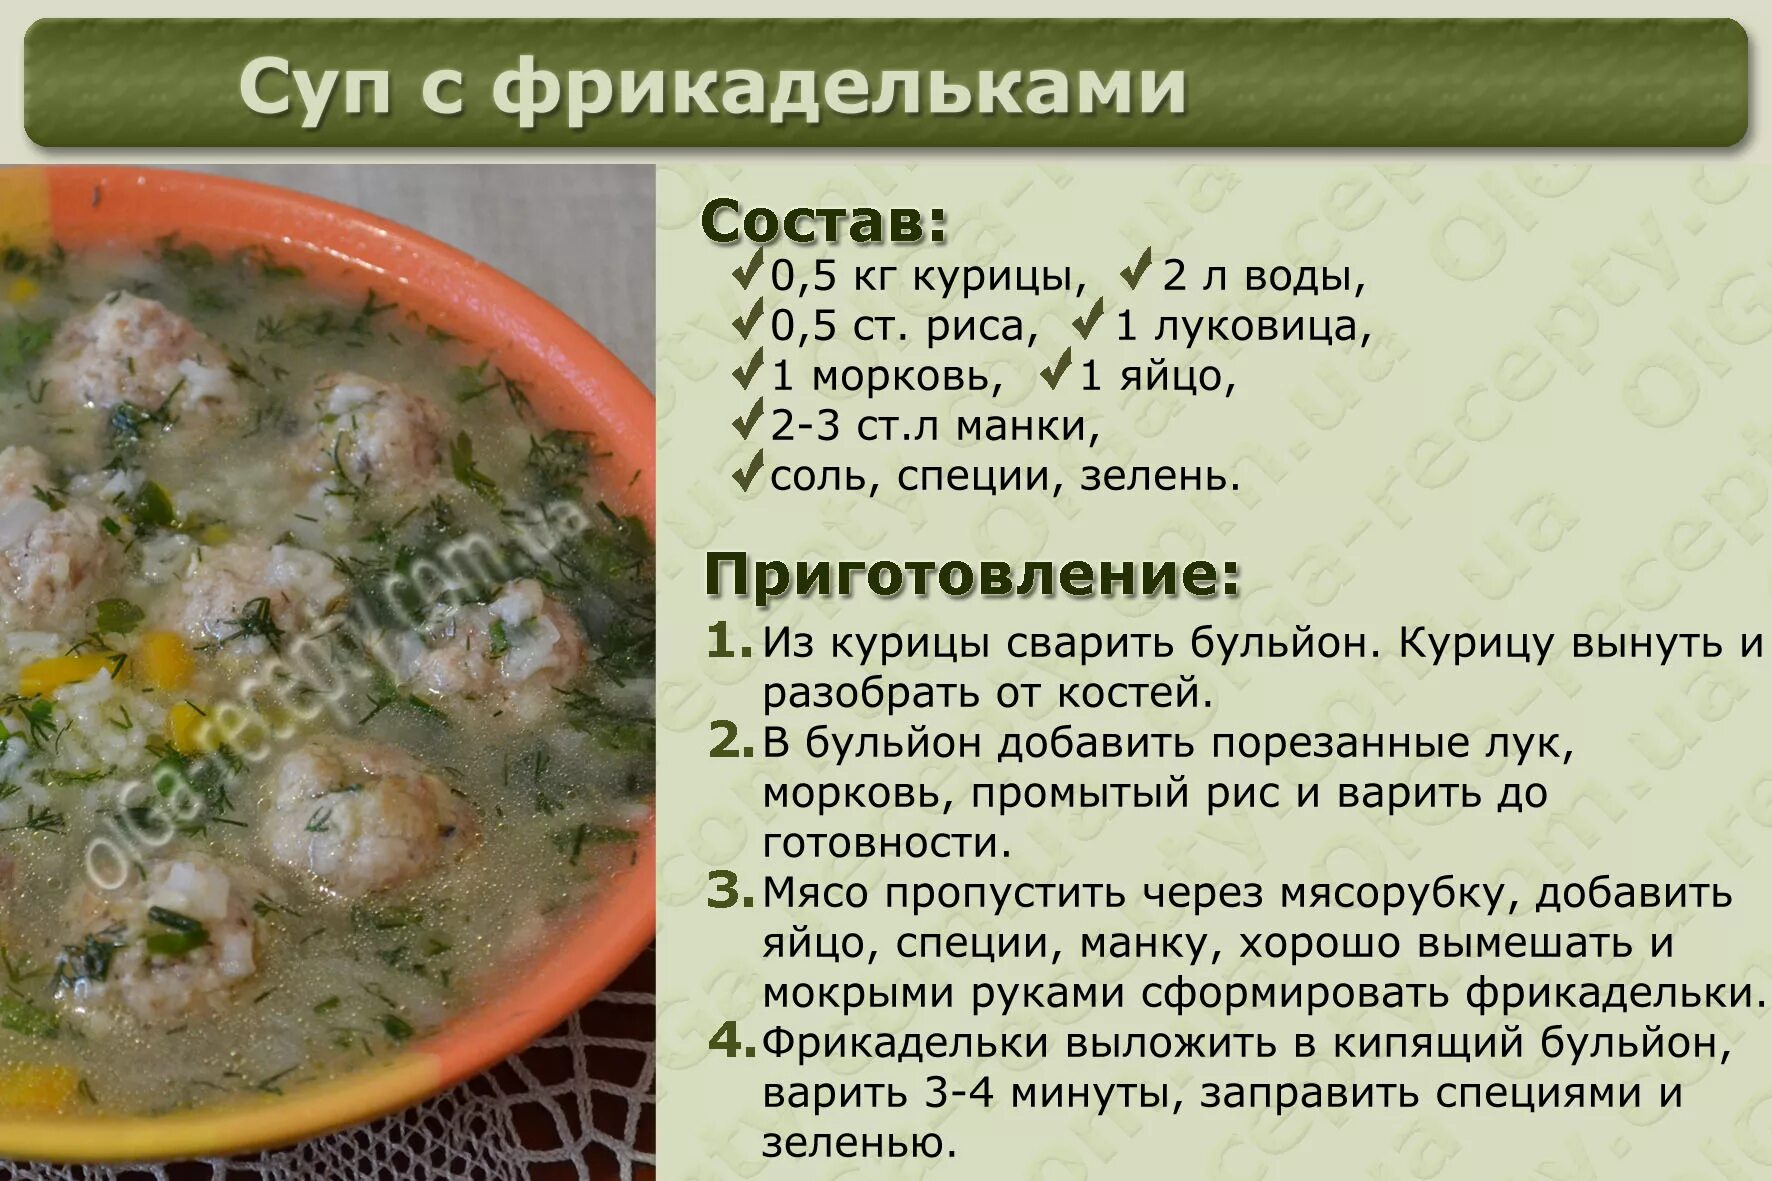 Рецепты без картинки. Рецепты в картинках. Рецепты супов в картинках. Рецепты с описанием приготовления. Рецепты в картинках с описанием.